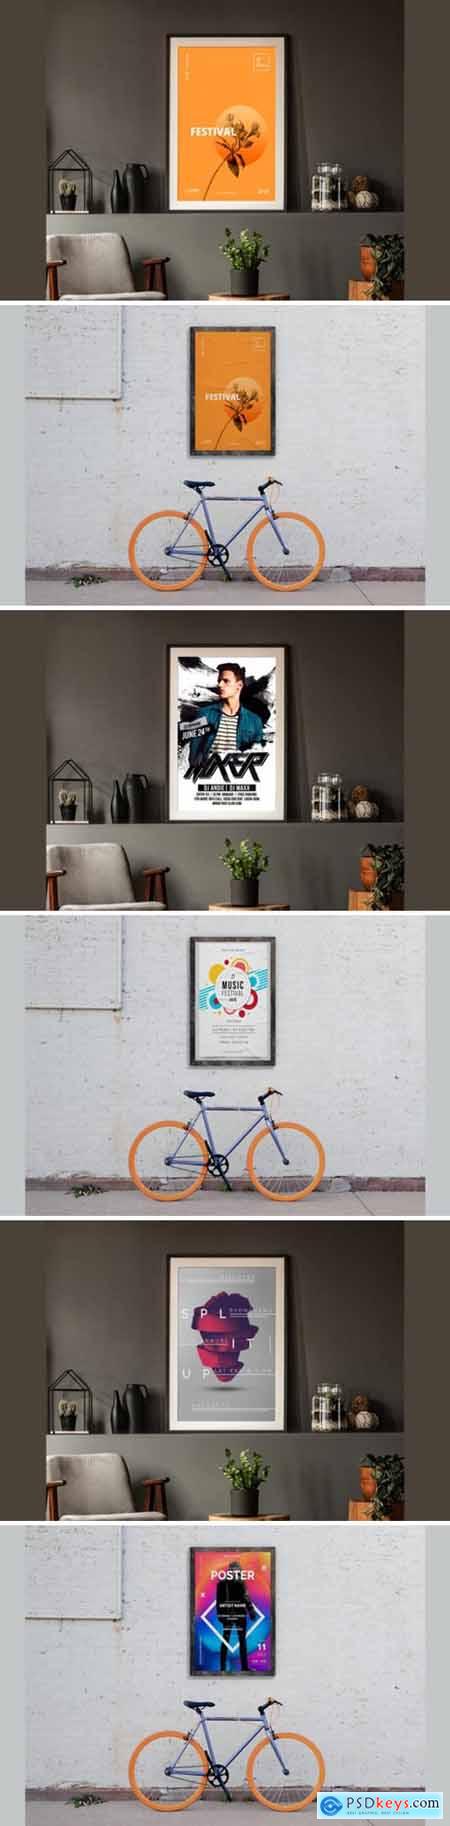 Posters & Frames Mockups PSD